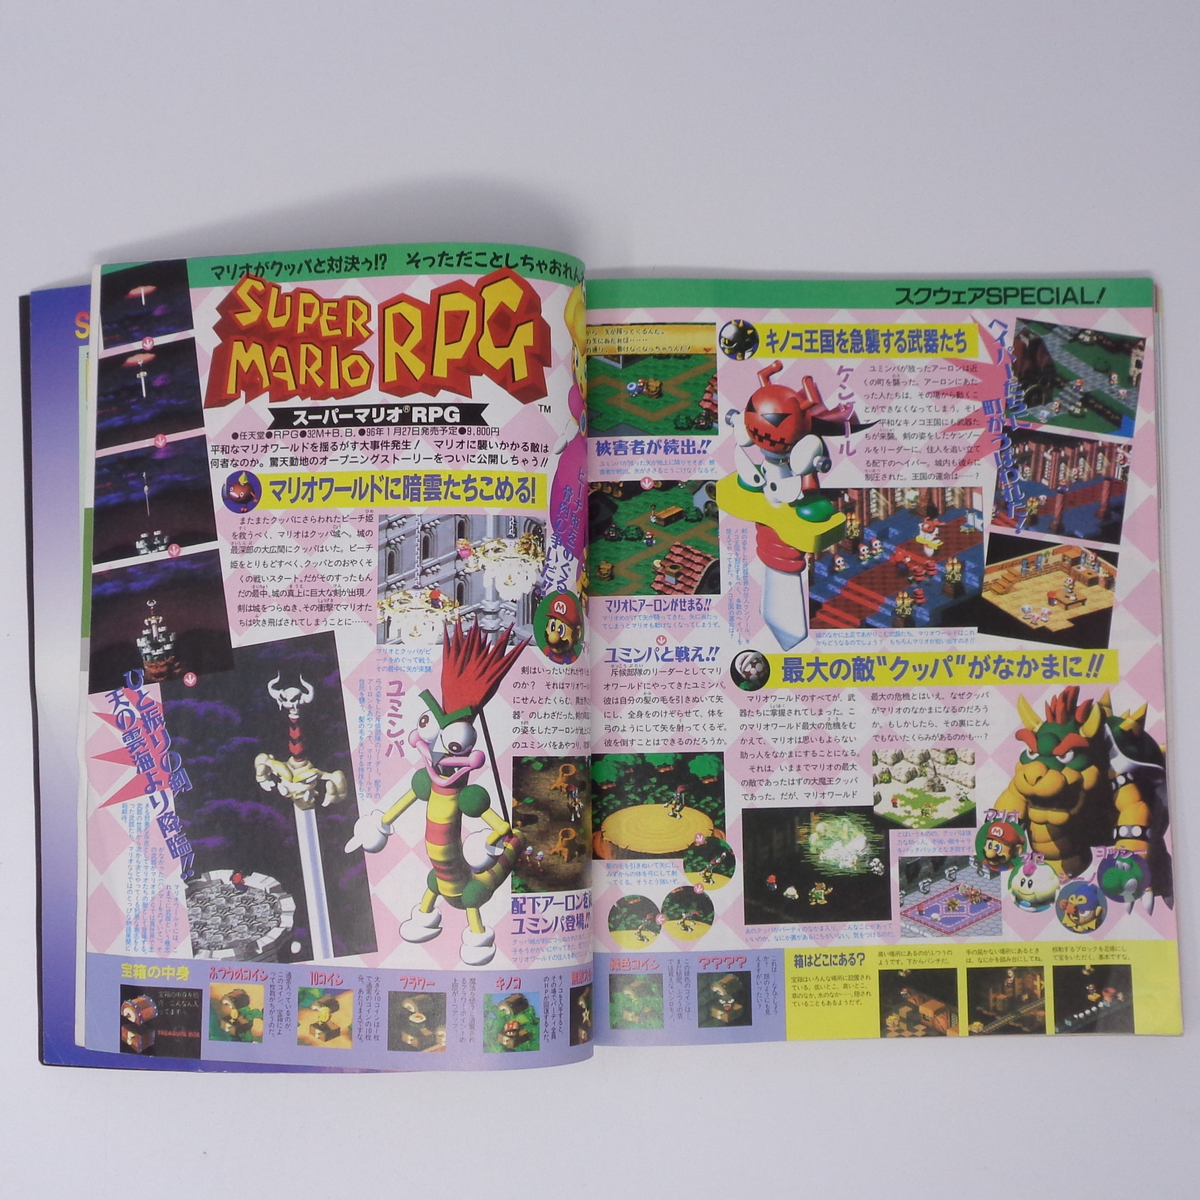 【折れあり】The SuperFamicom 1995年11月10日号NO.20 別冊付録無し/天地創造/ロマサガ3/Theスーパーファミコン/ゲーム雑誌[Free Shipping]